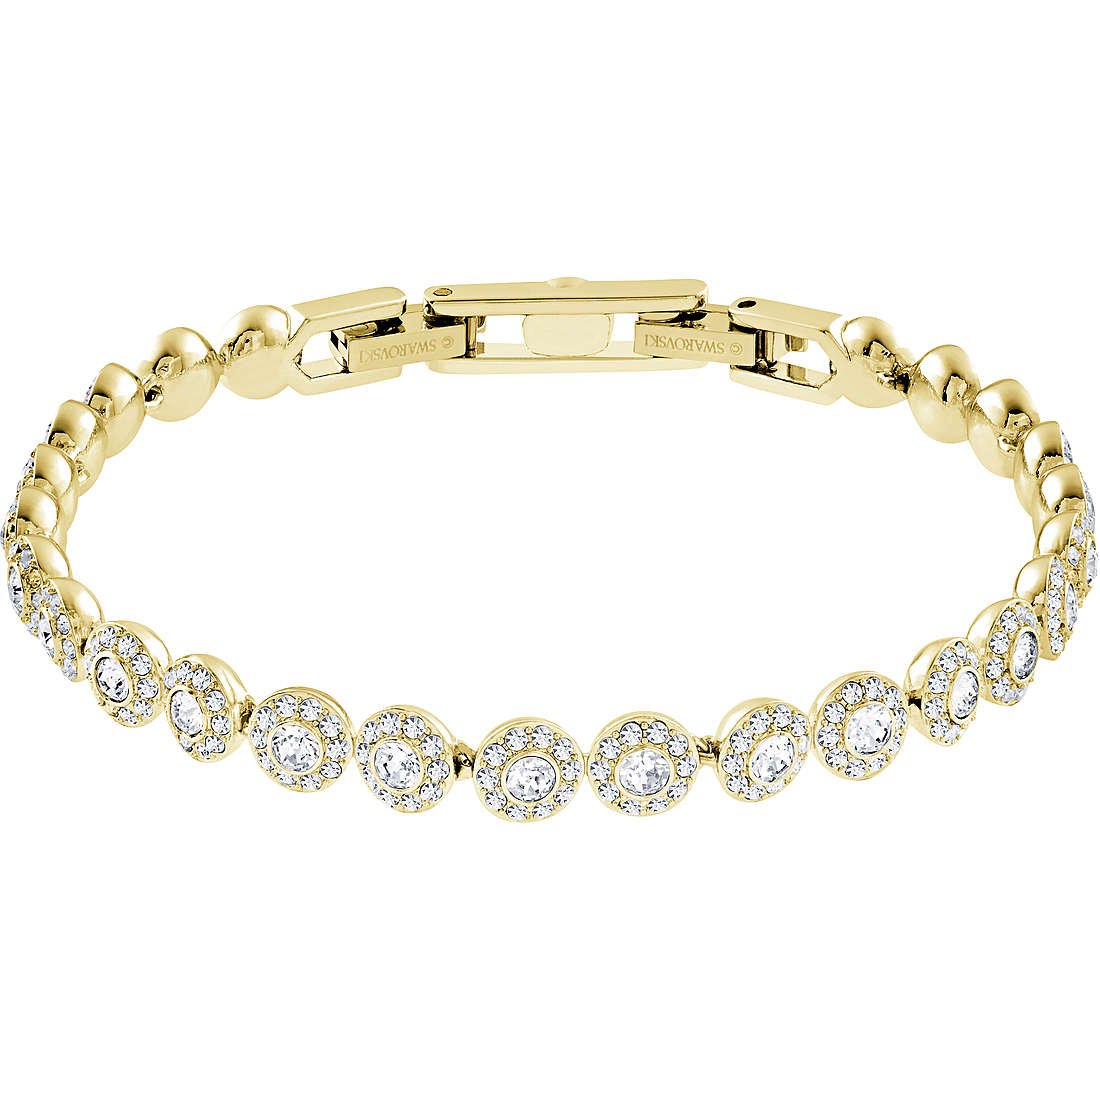 bracelet femme bijoux Swarovski Angelic 5505469